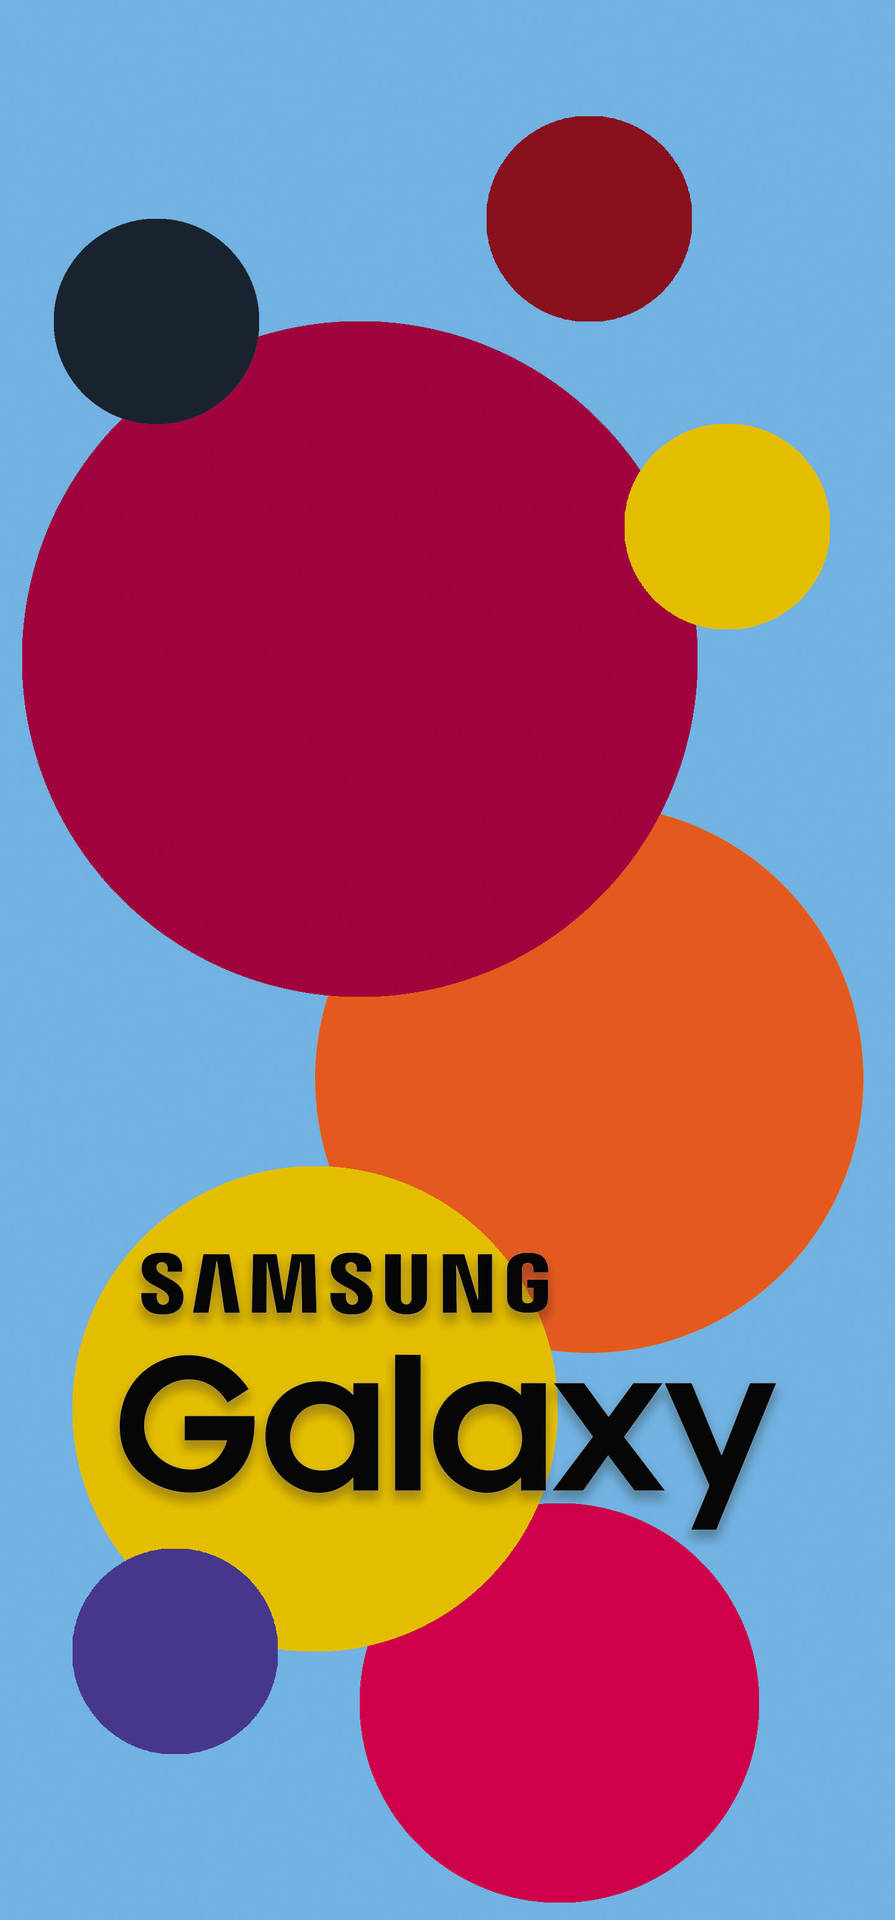 Samsung Galaxy Colorful Circles